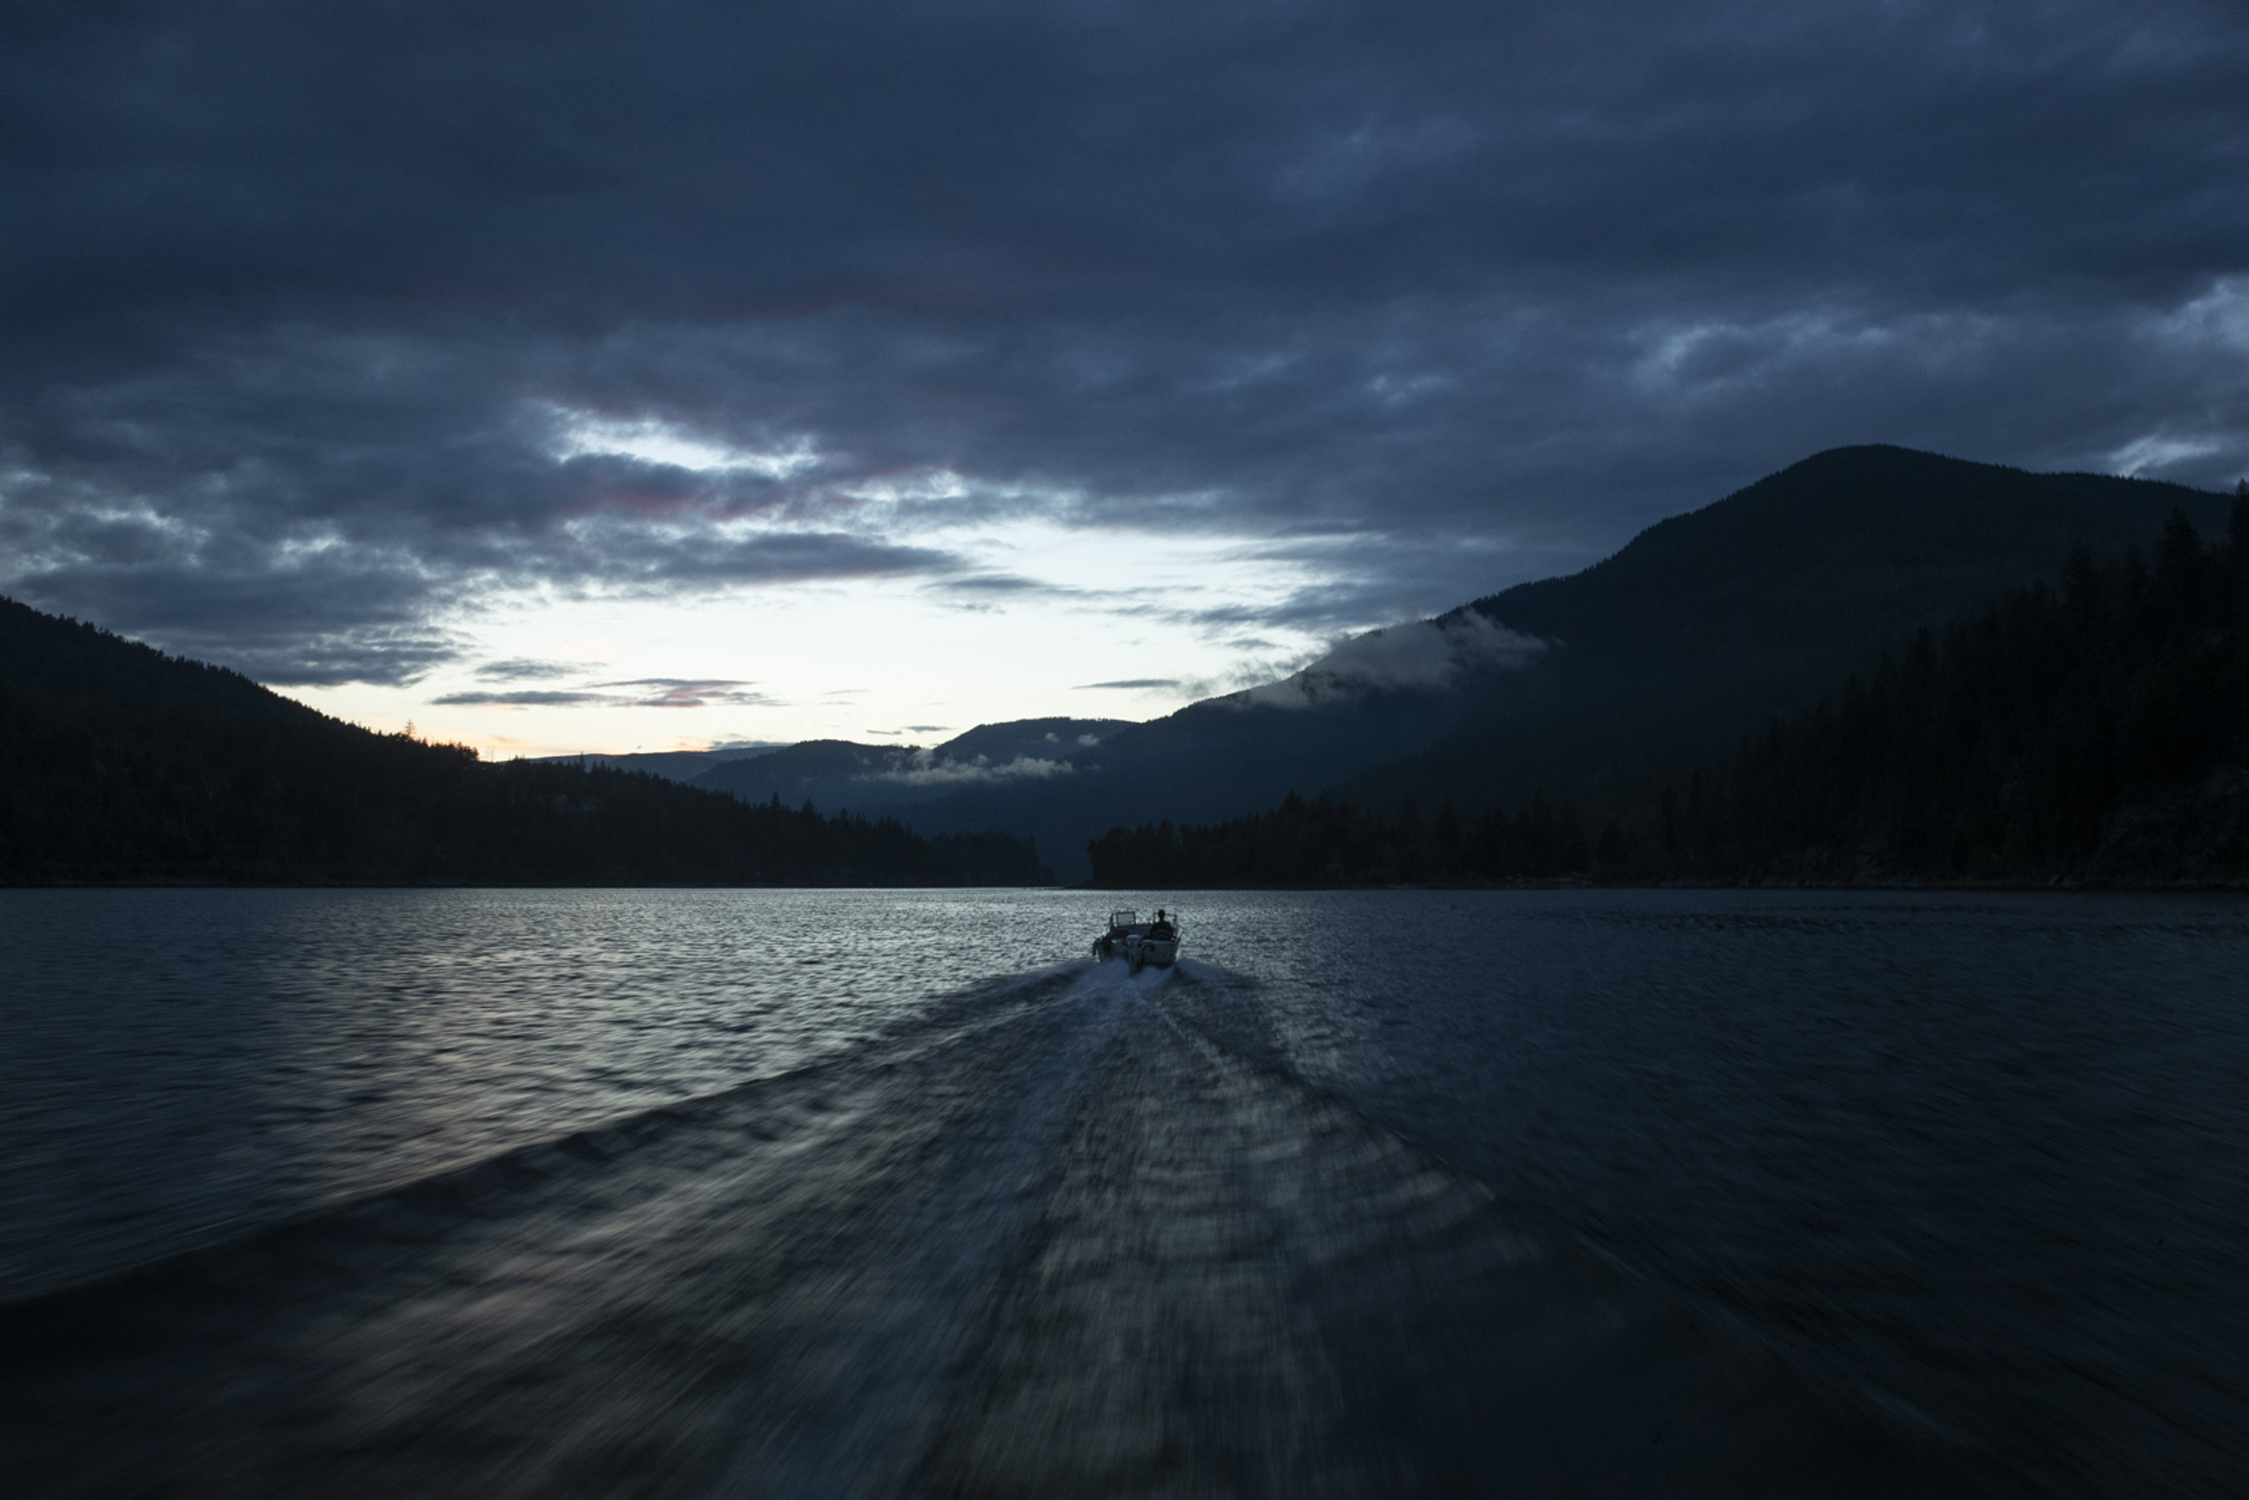 Sunrise boating with Kurt Sorge 